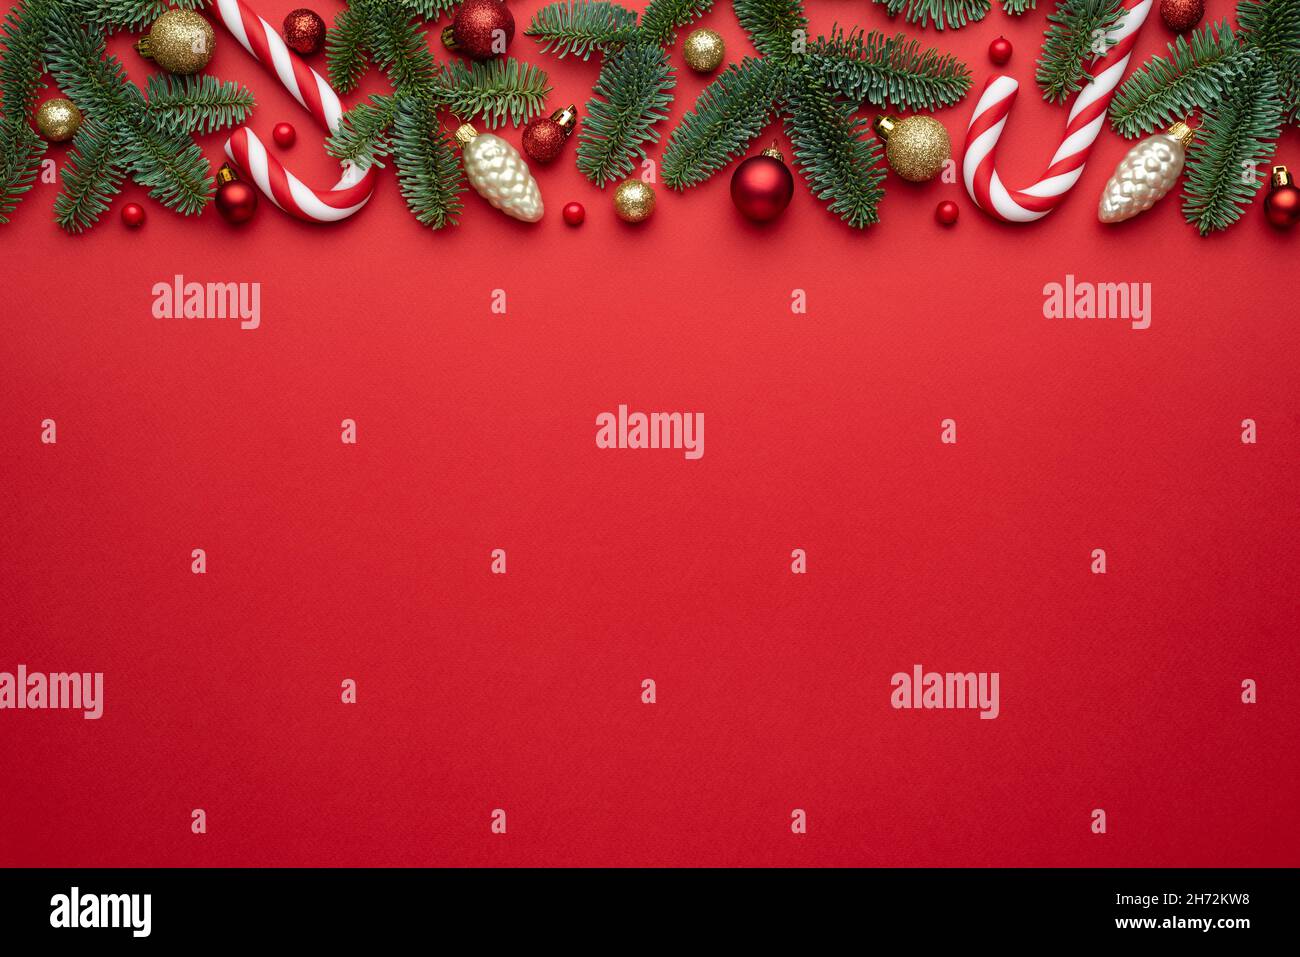 Sfondo rosso natalizio con bordo decorativo in rami di abete e decorazioni ad albero. Disposizione piatta, vista dall'alto e spazio di copia per il testo Foto Stock